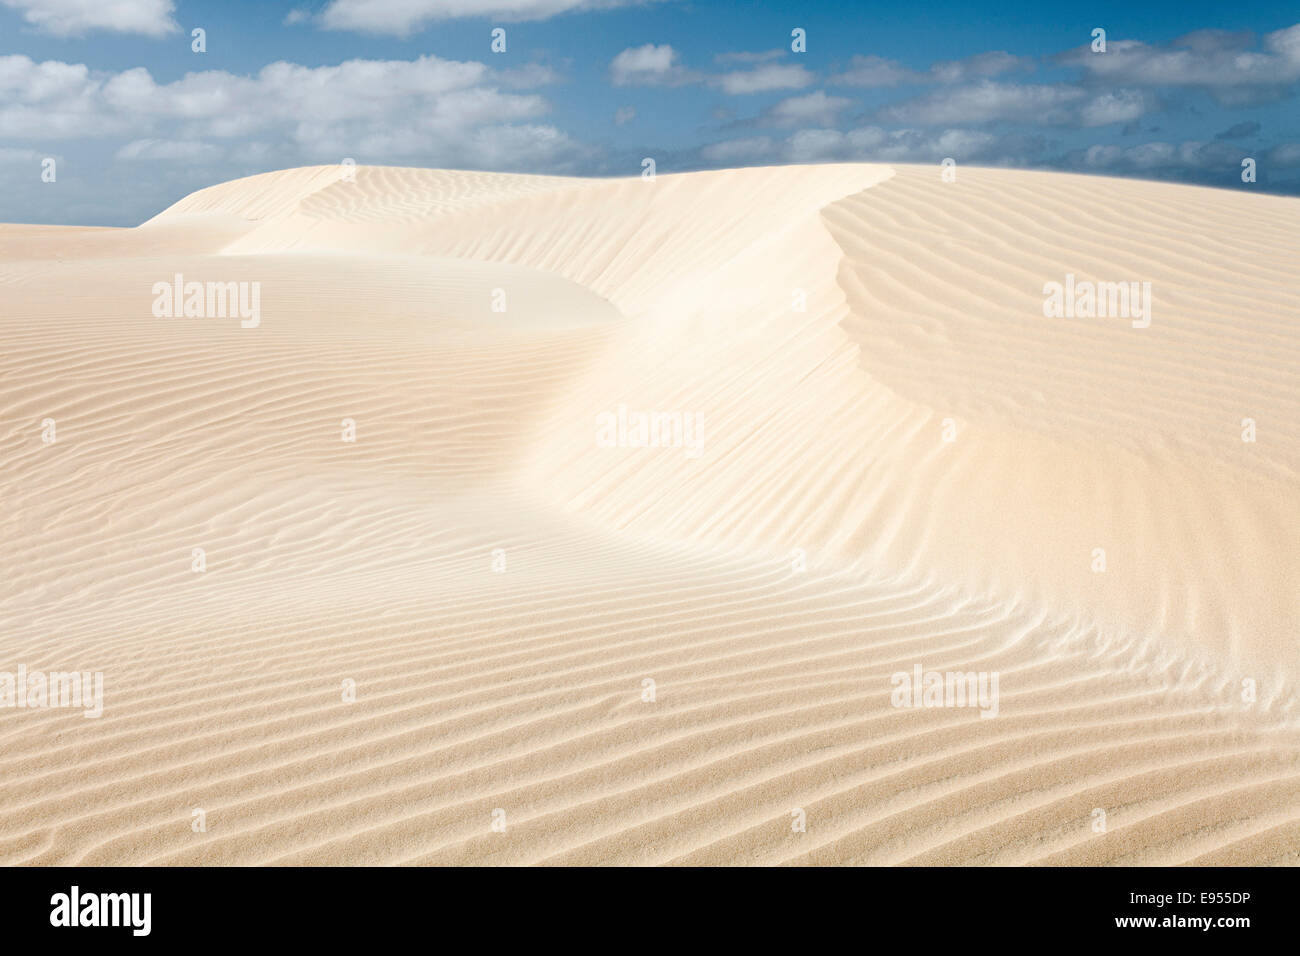 Sand dunes in the small desert Deserto Viana, island of Boa Vista, Cape Verde, Republic of Cabo Verde Stock Photo